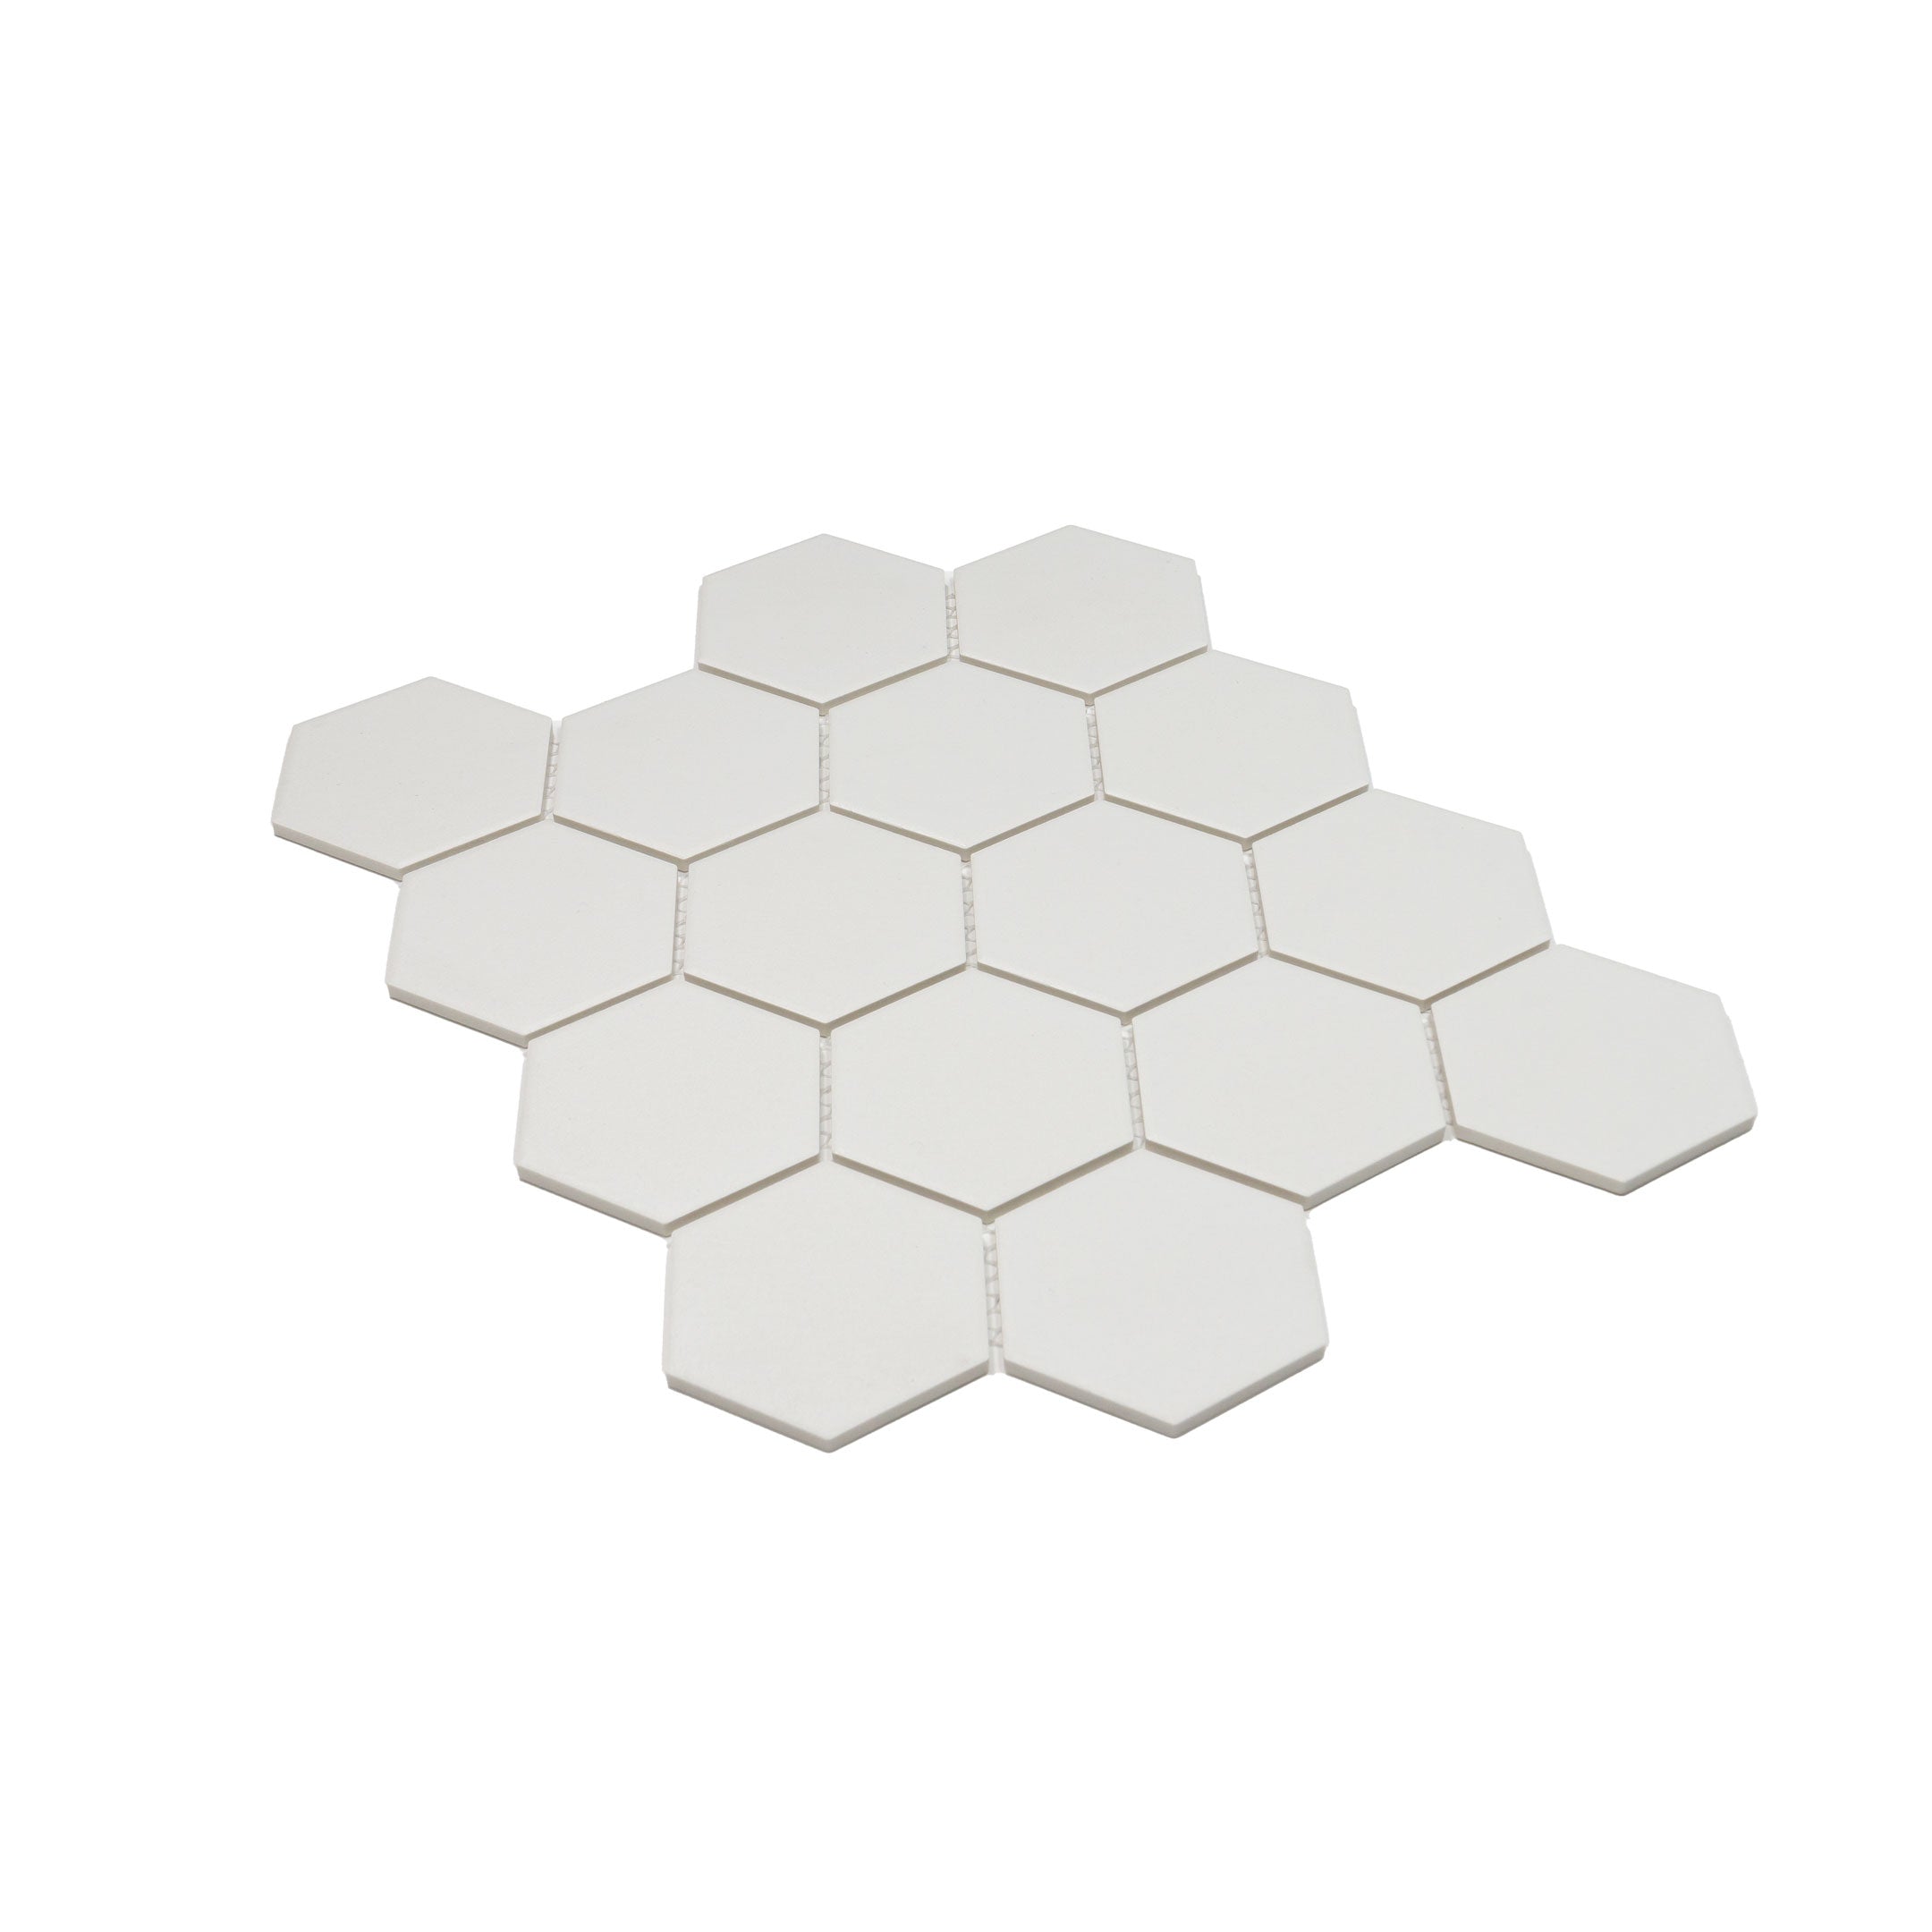 Sage 3" x 3" Hexagon Porcelain Mosaic Tile